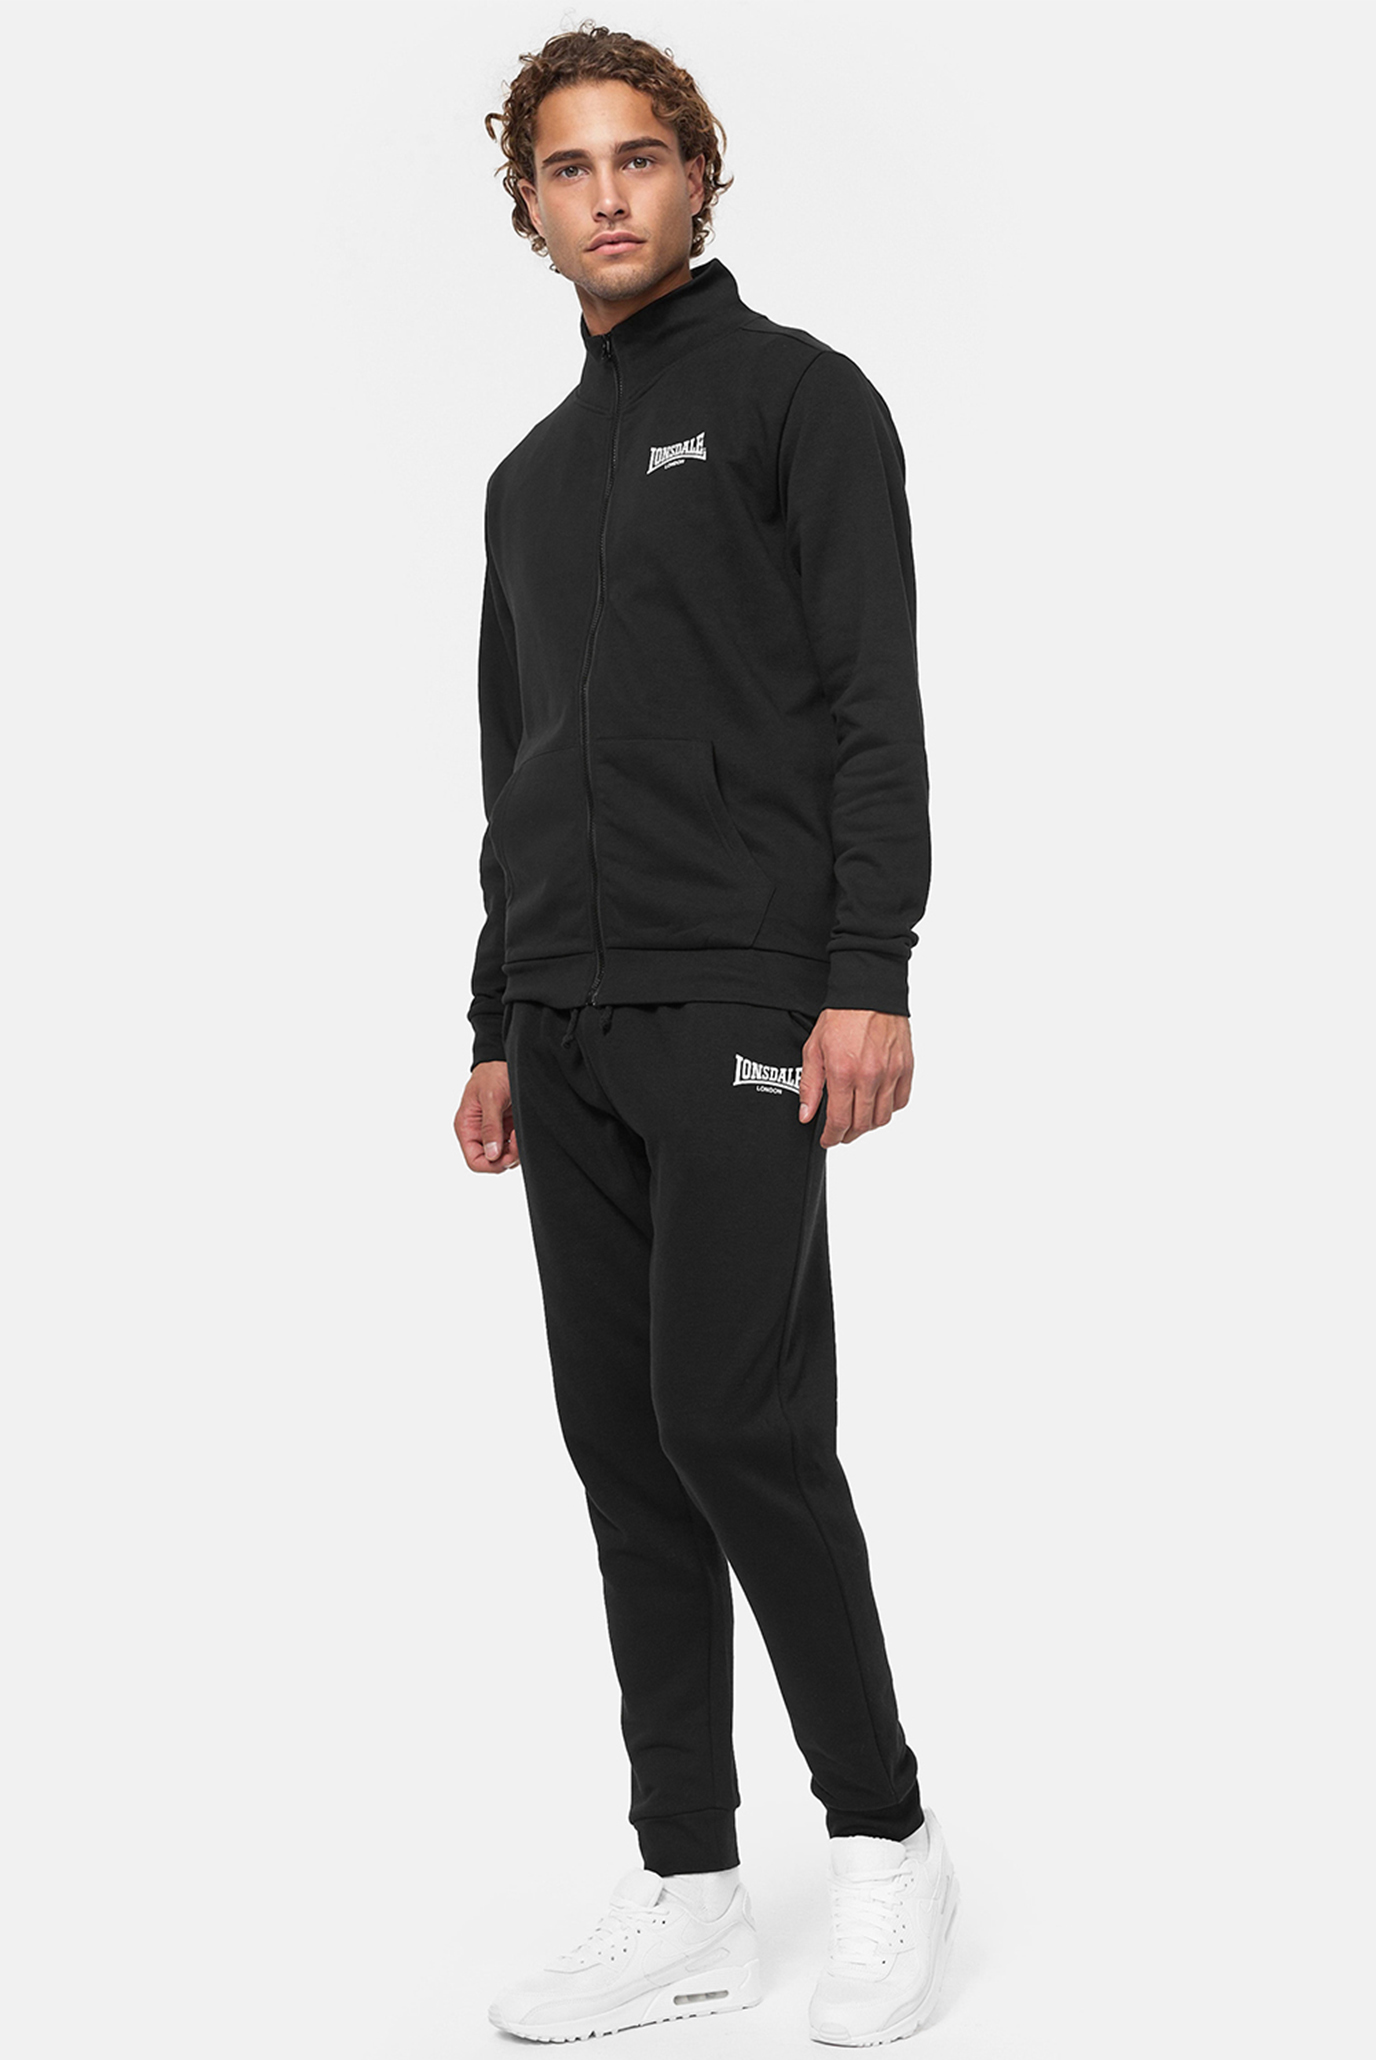 Мужской черный спортивный костюм (кофта, брюки) BOGNIBRAE 1